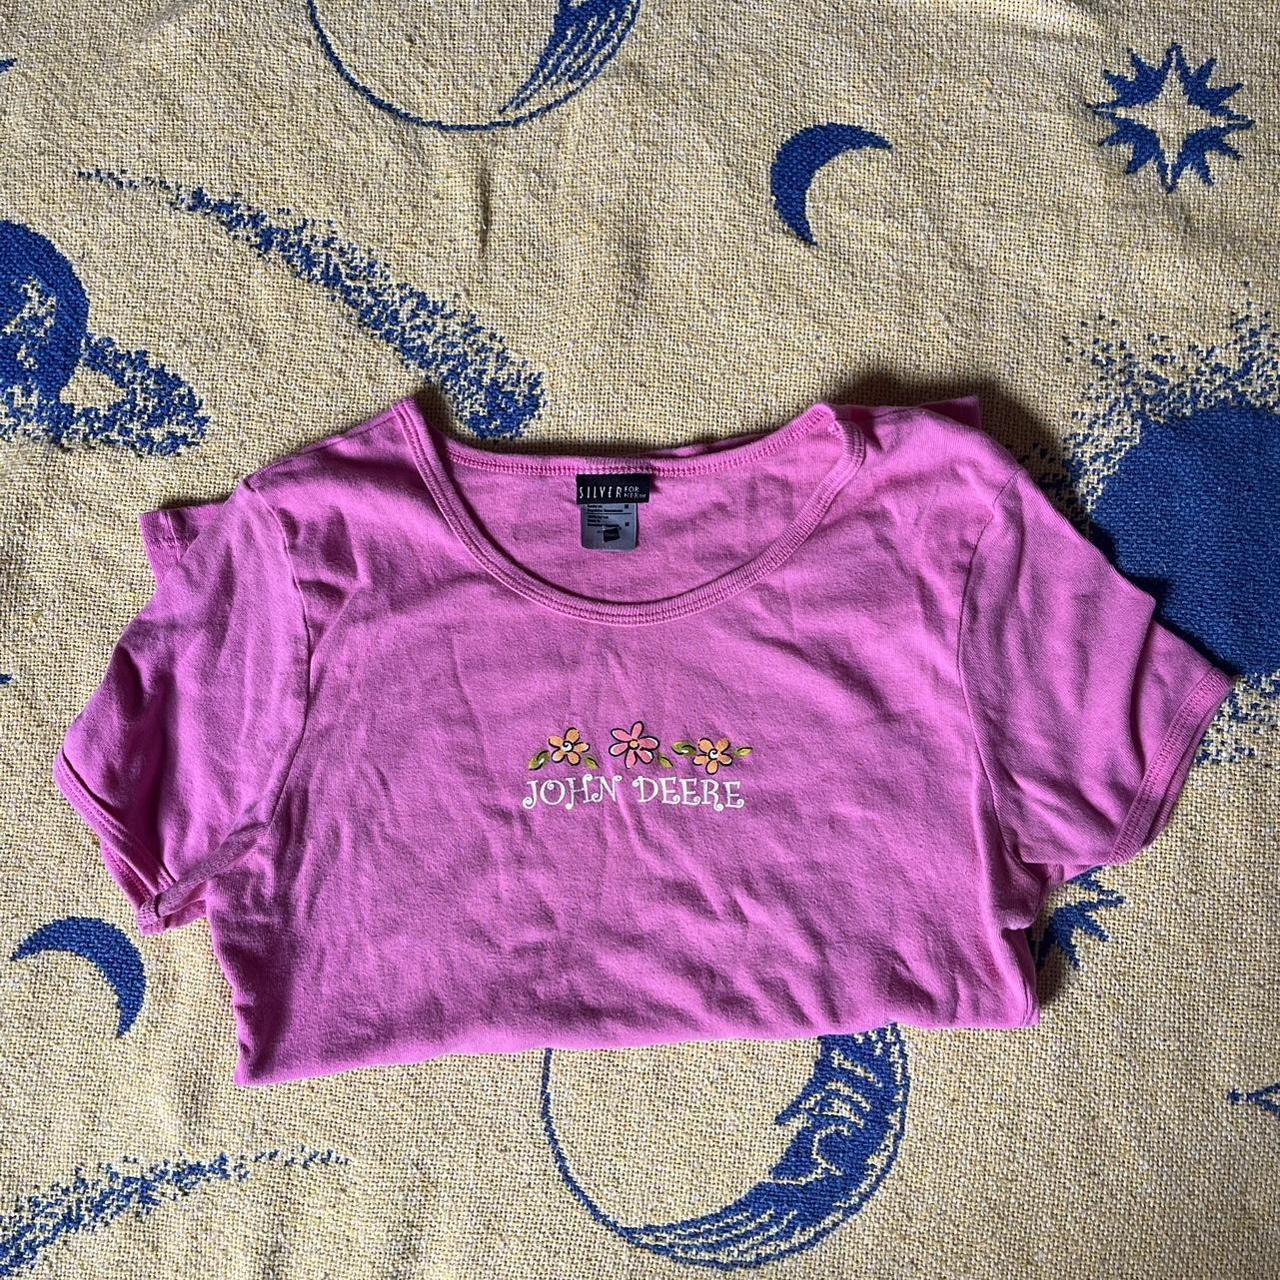 Hanes Women's Pink T-shirt | Depop